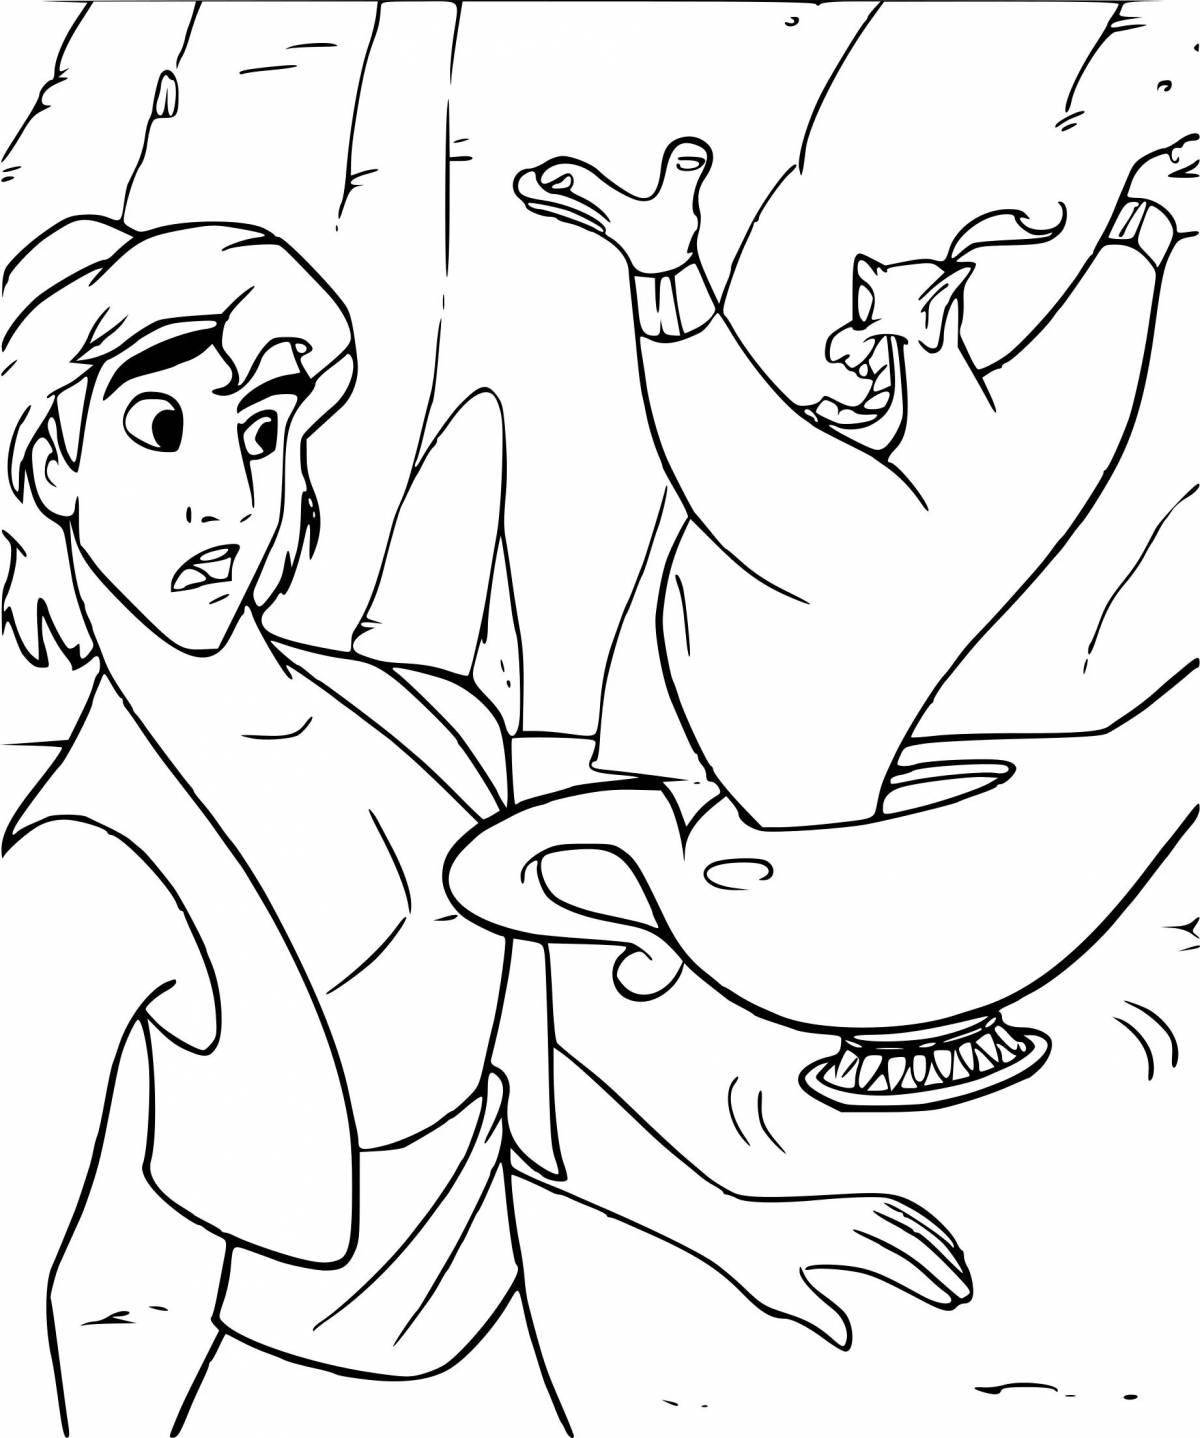 Aladdin's vibrant coloring page